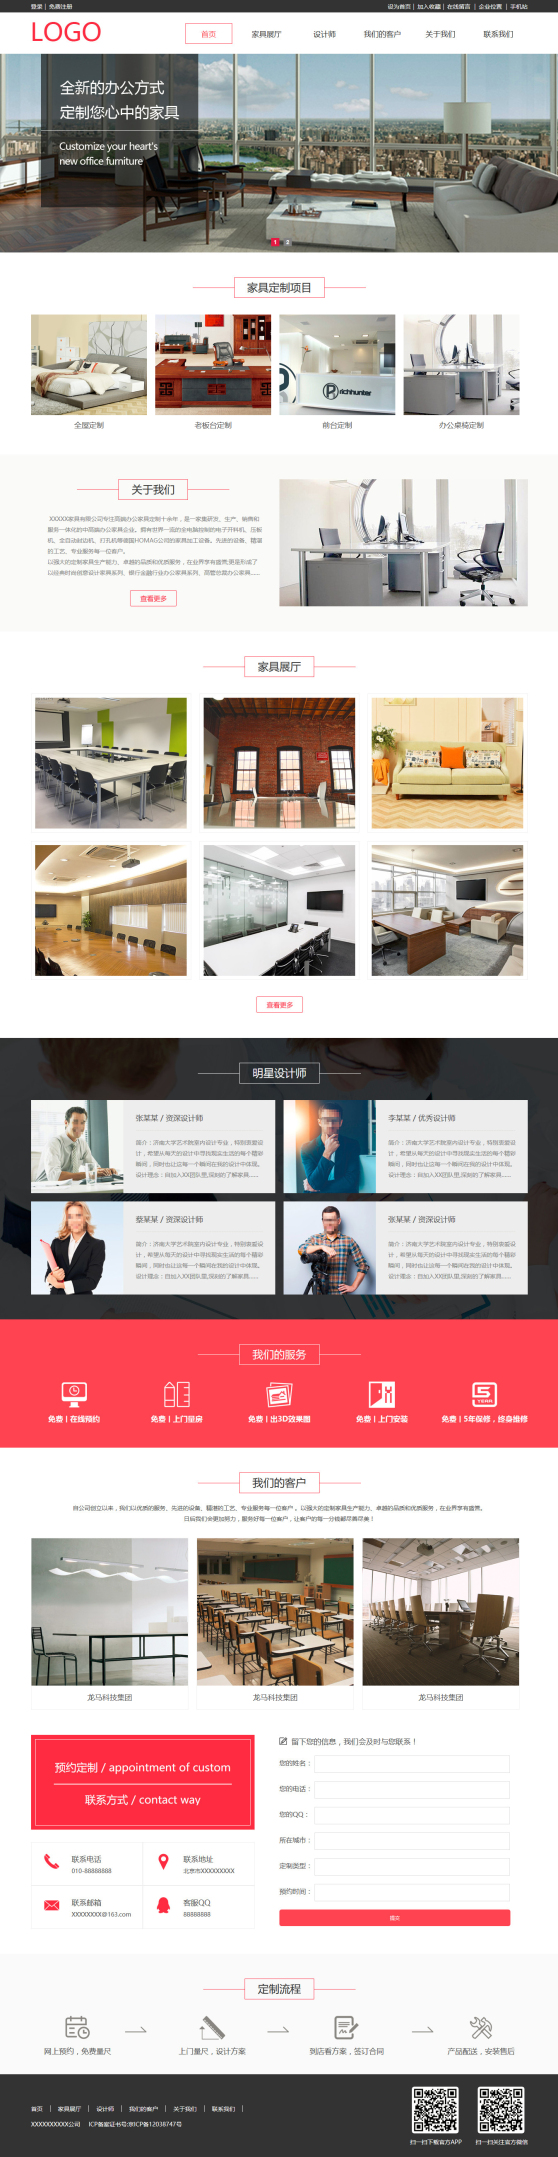 高端定制家具企业网站模板